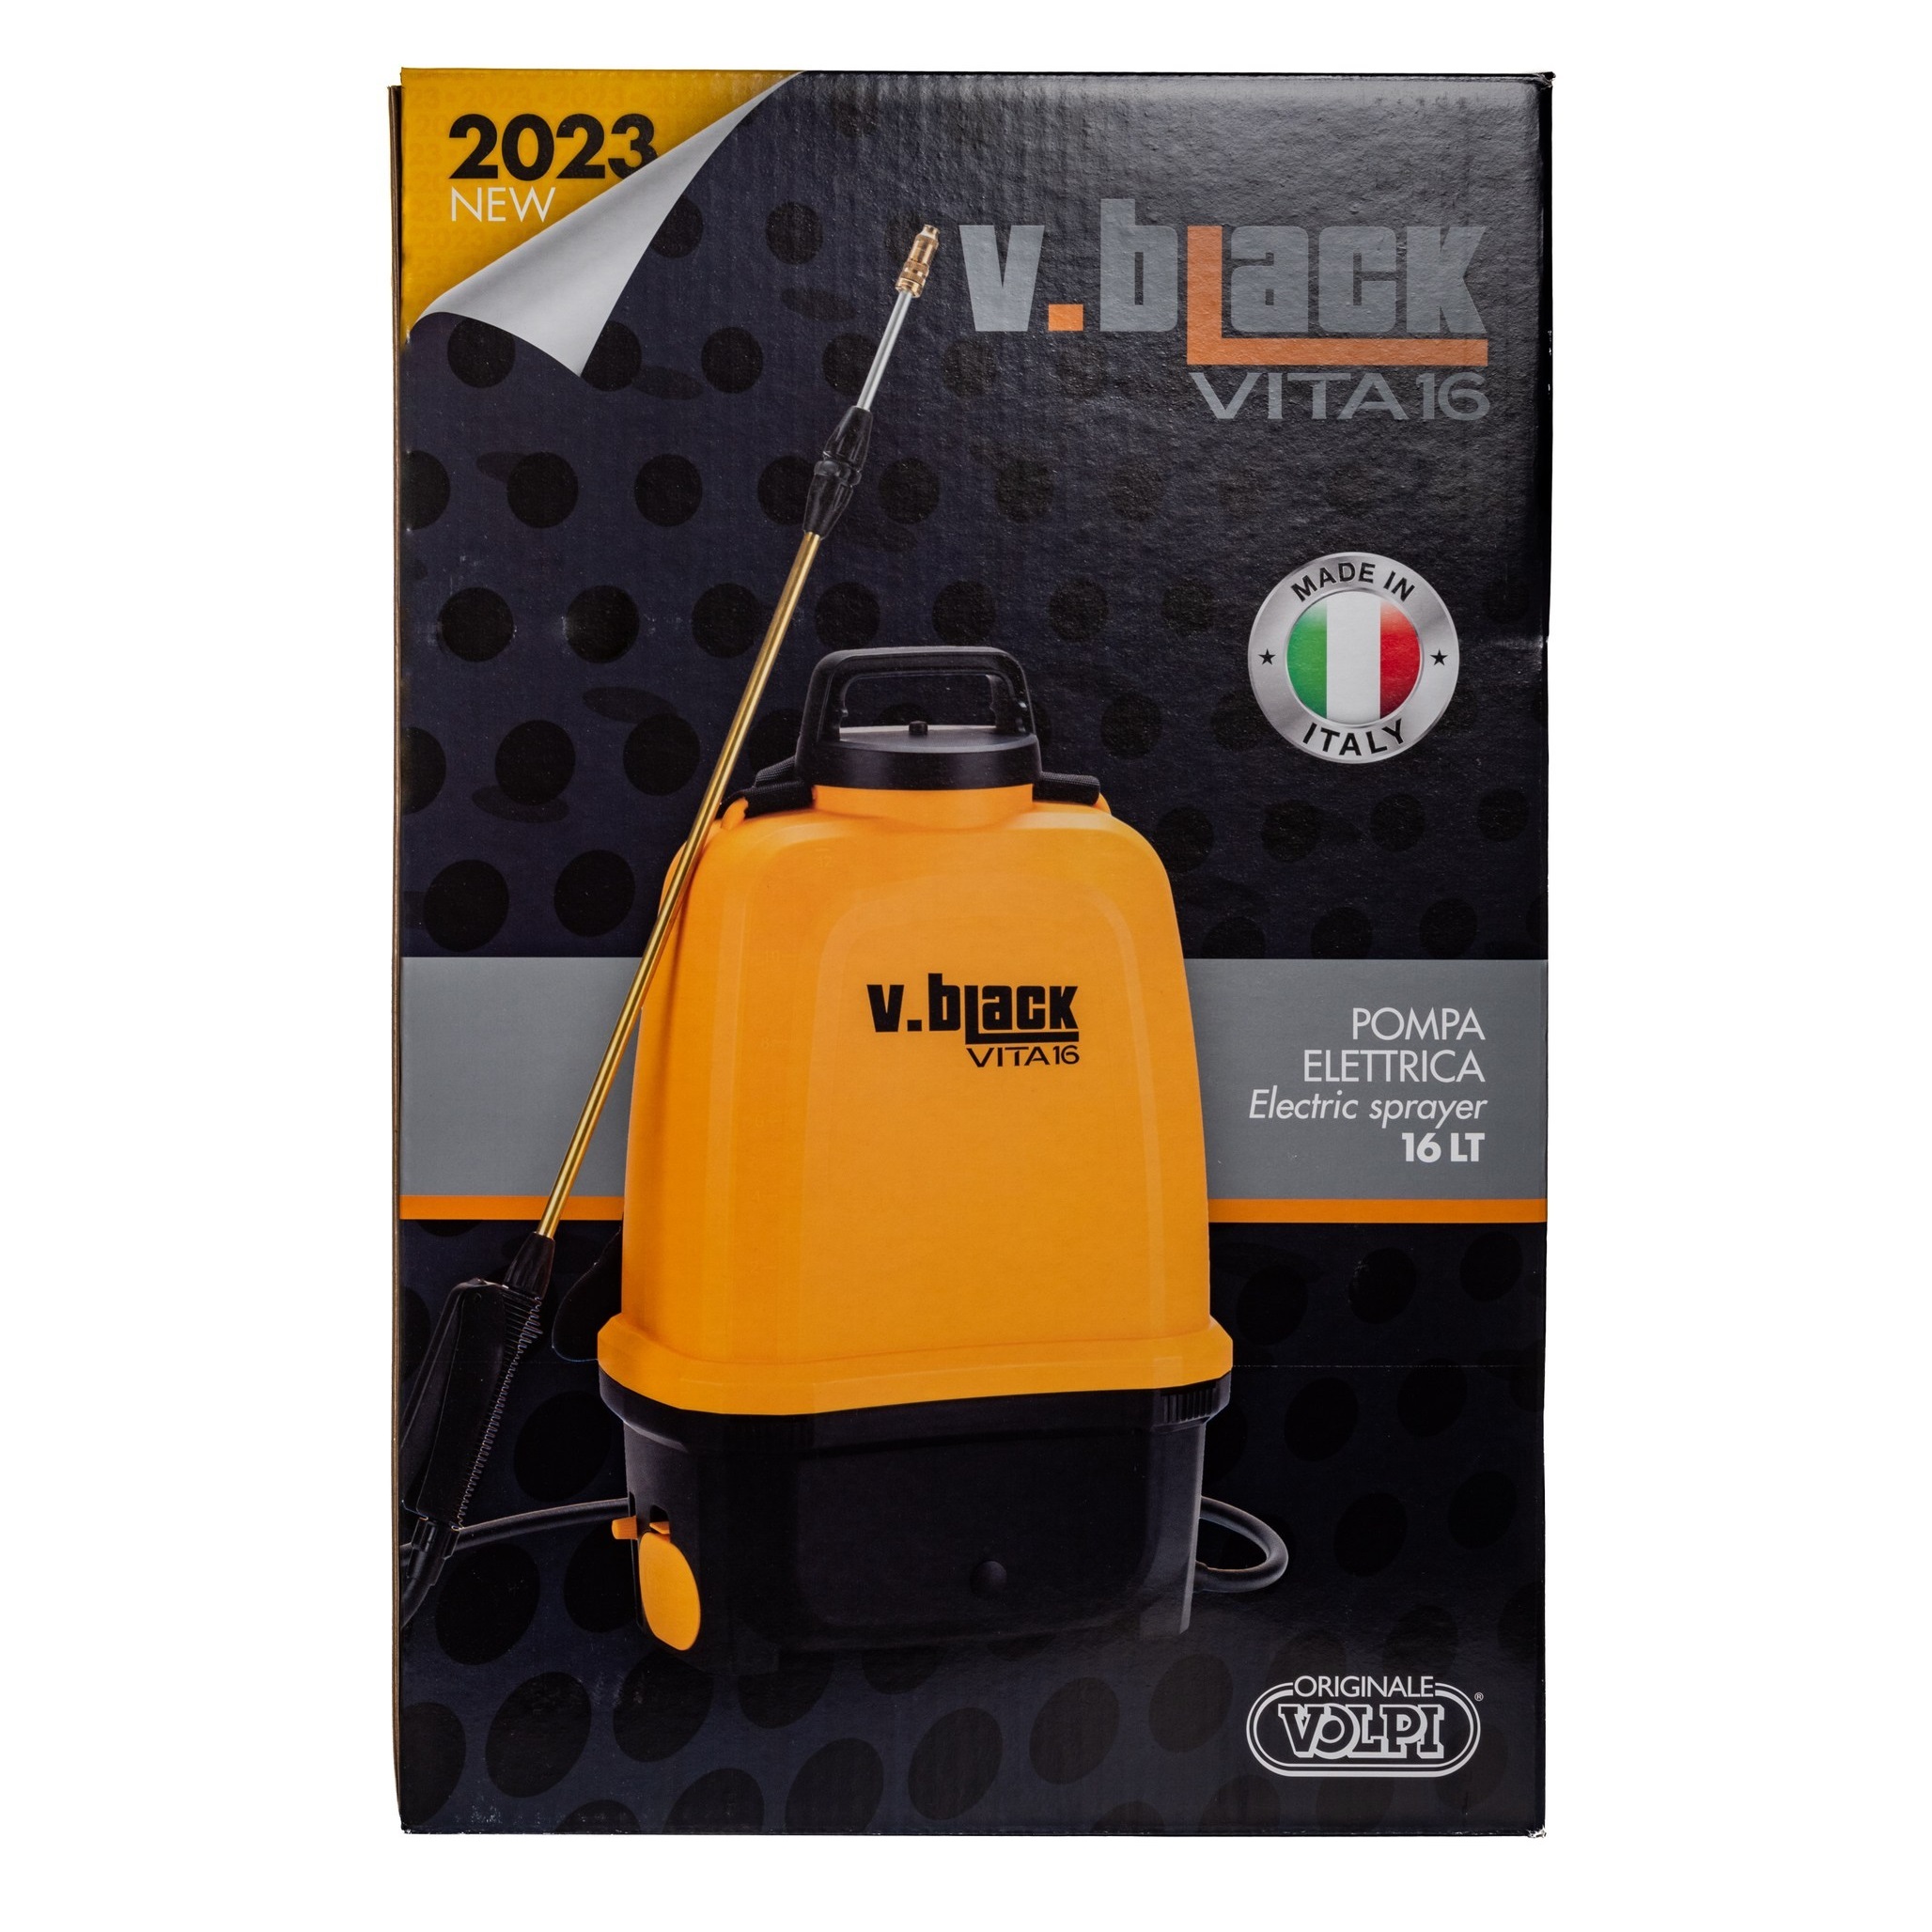 Распылитель аккумуляторный Volpi vita 16, цвет оранжевый - фото 7